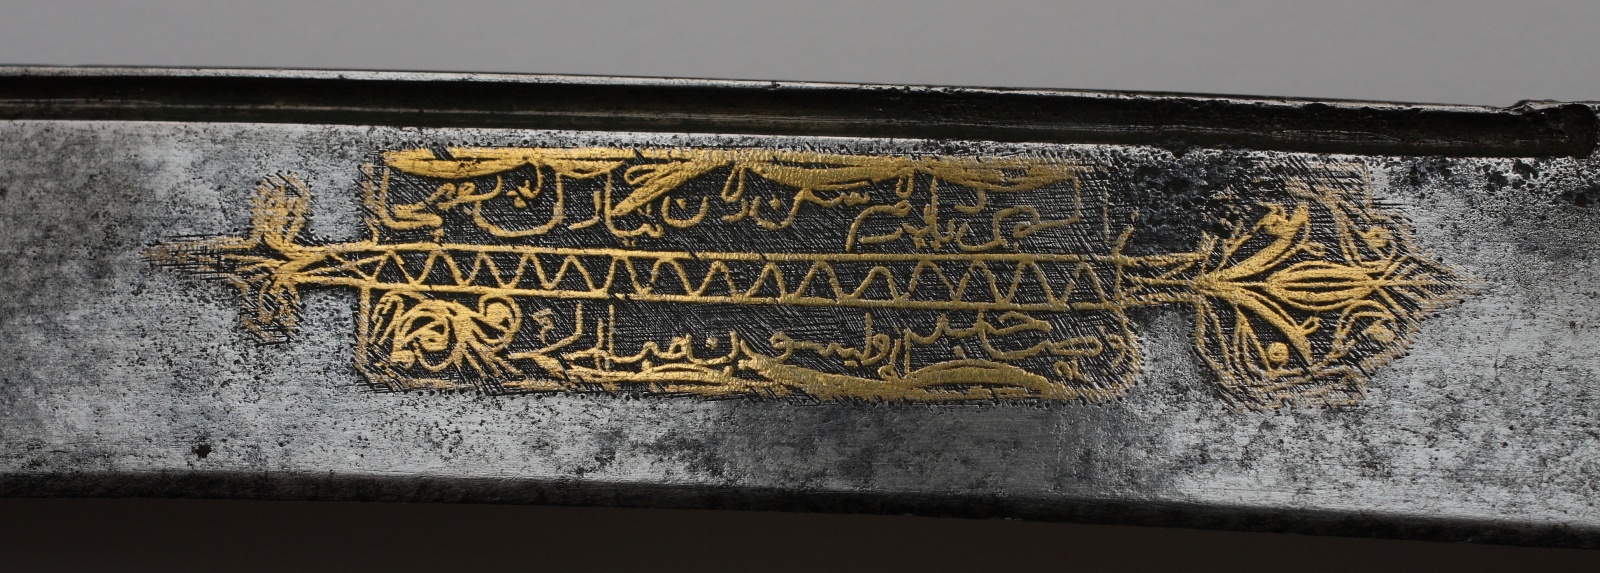 Надпись на персидском языке в фигурном картуше, выполненная на клине турецкого ятагана (из коллекции Азовского музея-заповедника)